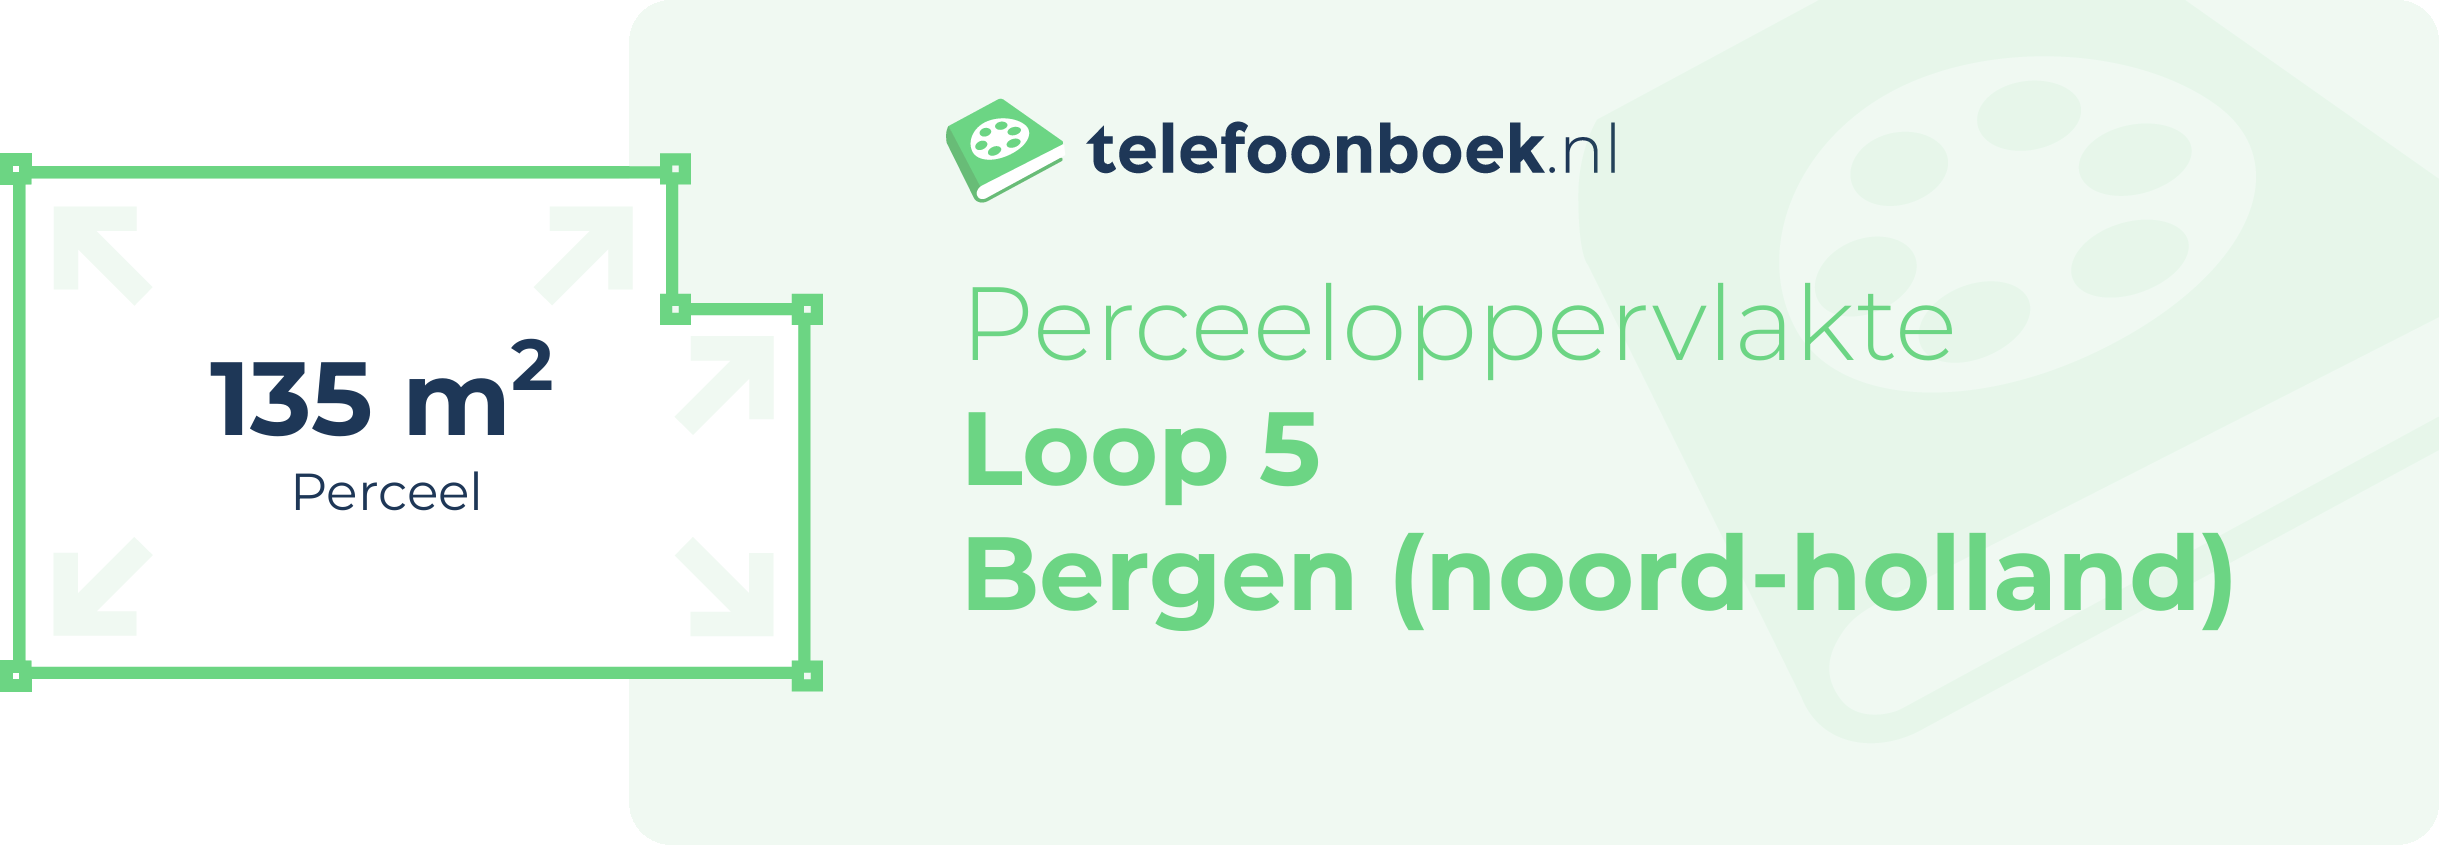 Perceeloppervlakte Loop 5 Bergen (Noord-Holland)